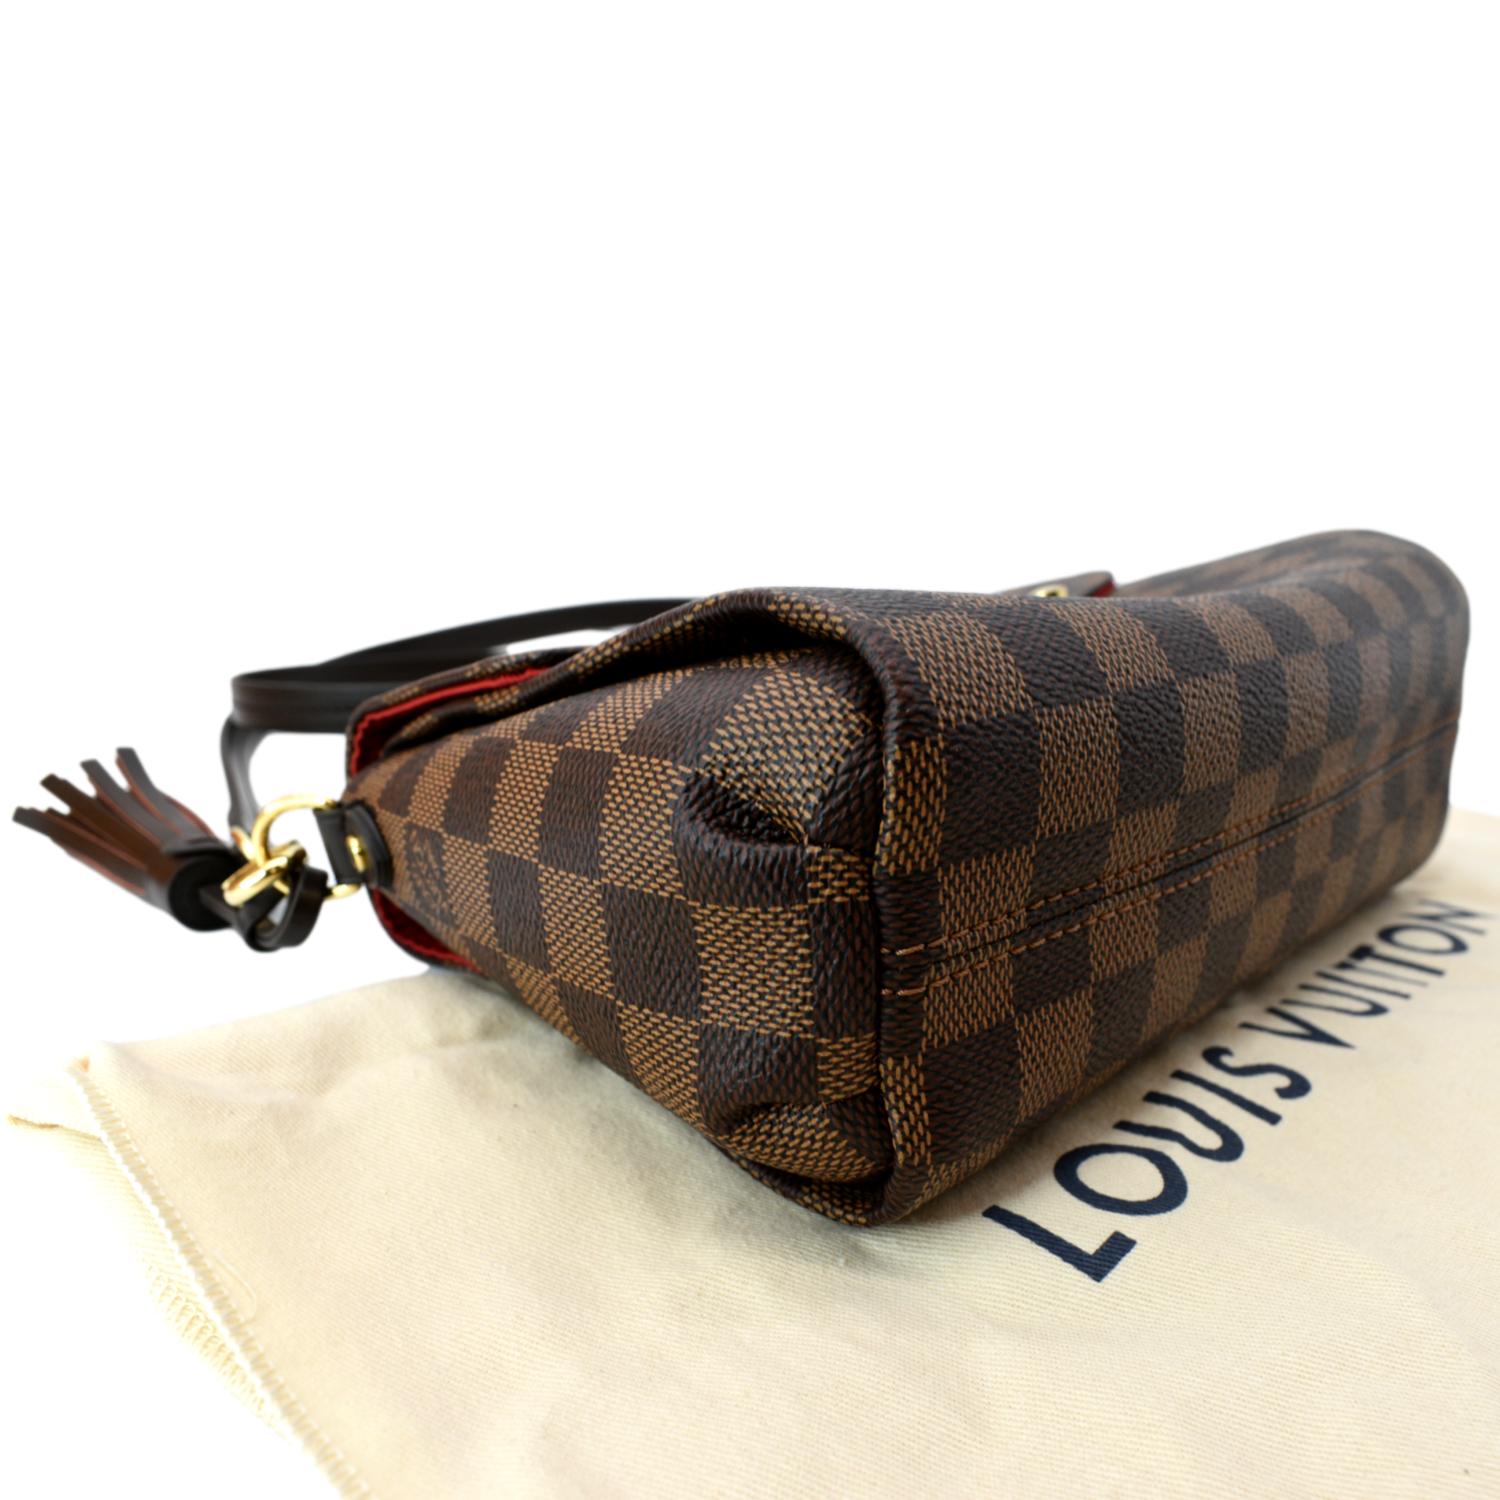 Croisette cloth crossbody bag Louis Vuitton Brown in Cloth - 33575774